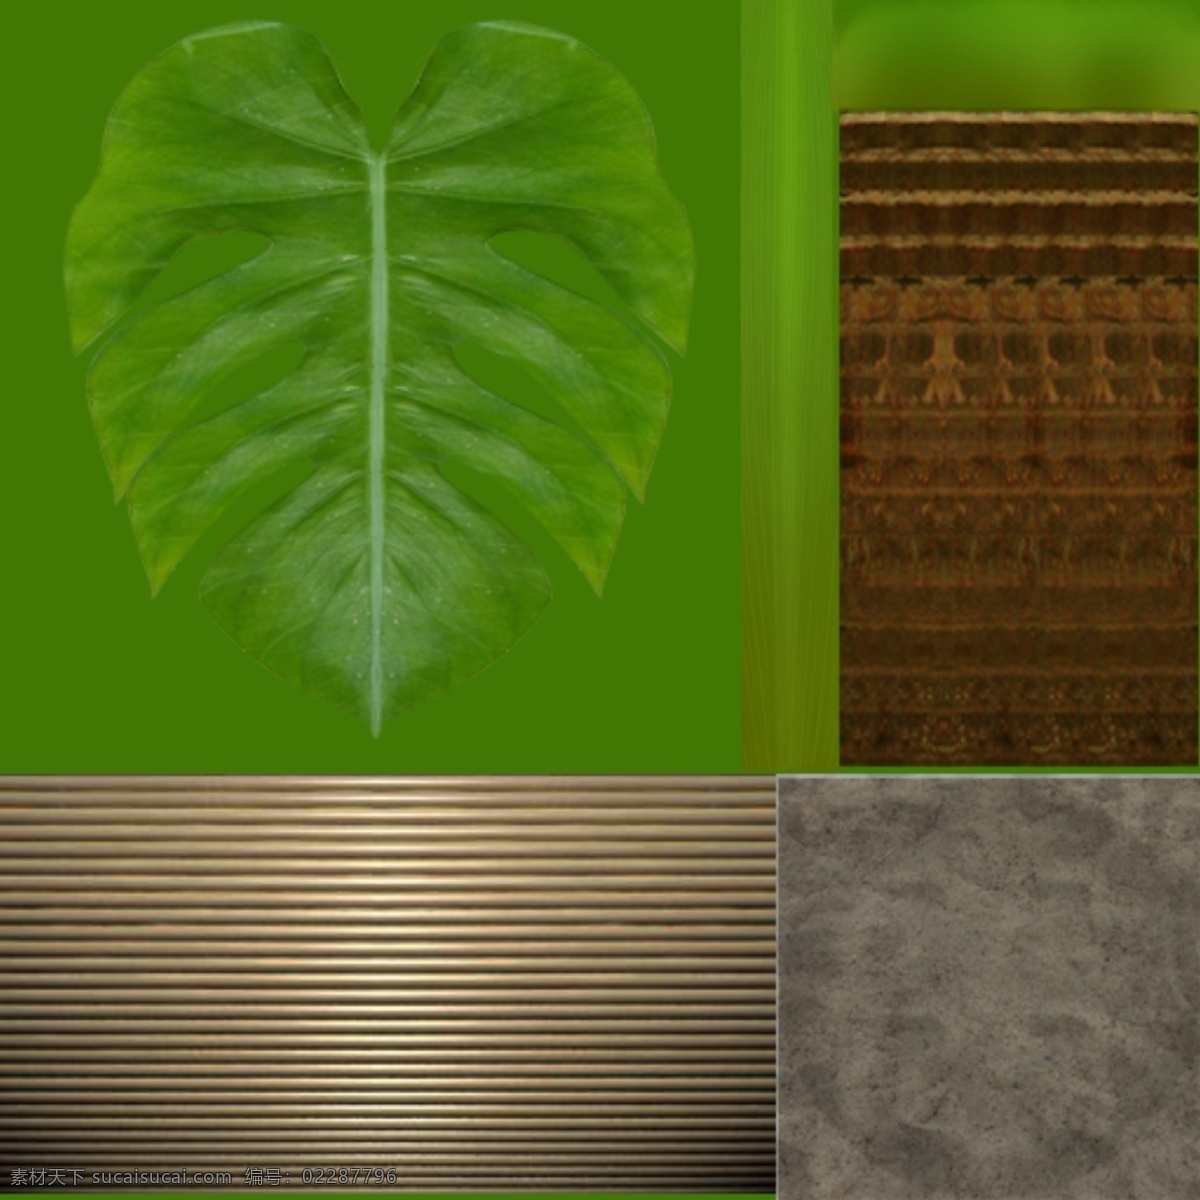 龟背 竹 3d设计模型 max 盆栽 室内 源文件 展示模型 植物 模板下载 龟背竹 低模型物件 3d模型素材 其他3d模型